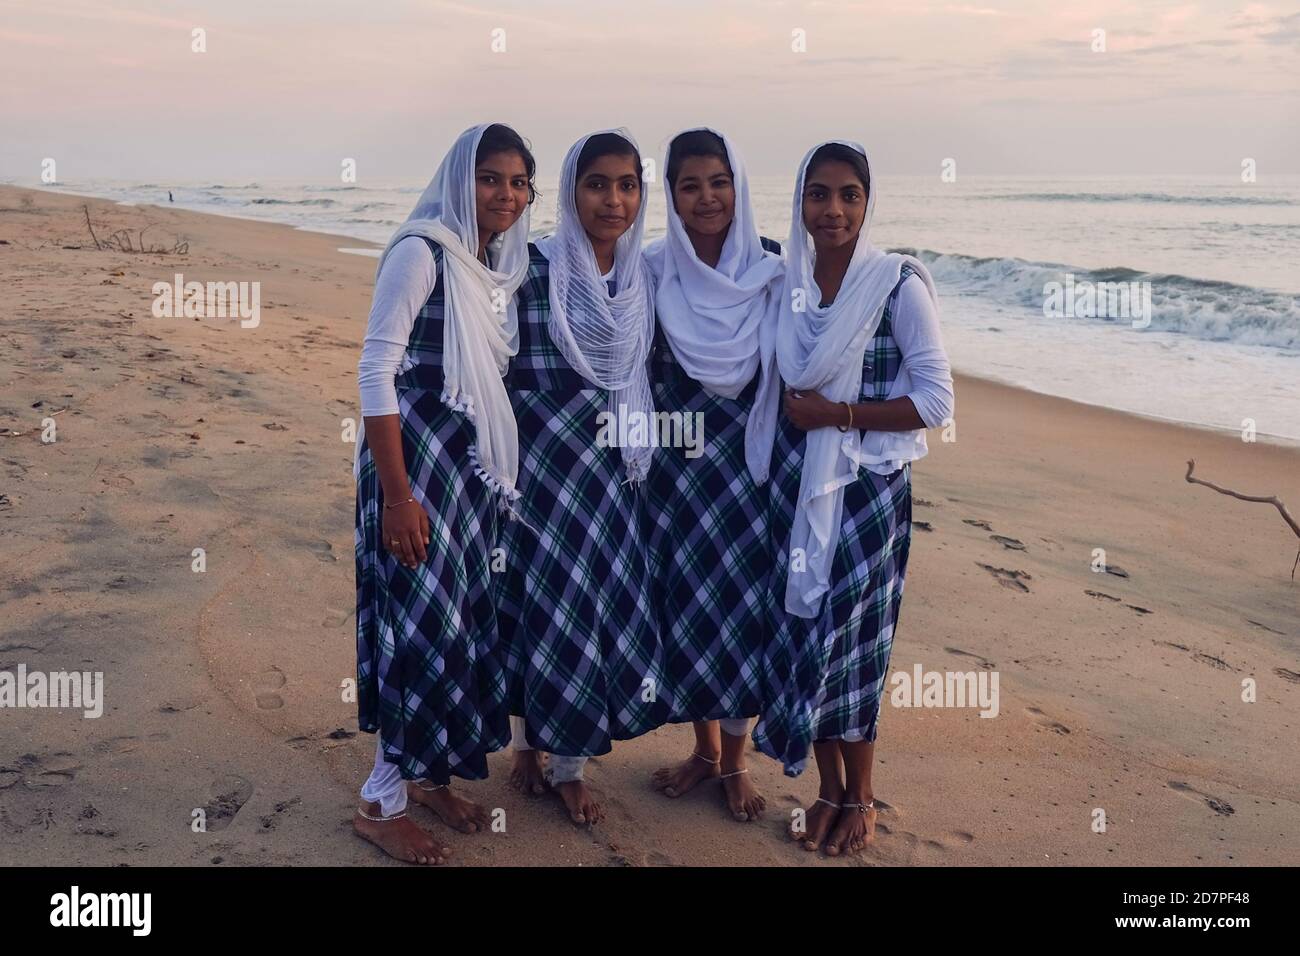 Vier junge indische Mädchen, Schwestern aus lokalen armen hindu-Familie, tragen ähnliche Kleider und weiße drapierten Kopftücher laufen barfuß am Meeresstrand Stockfoto